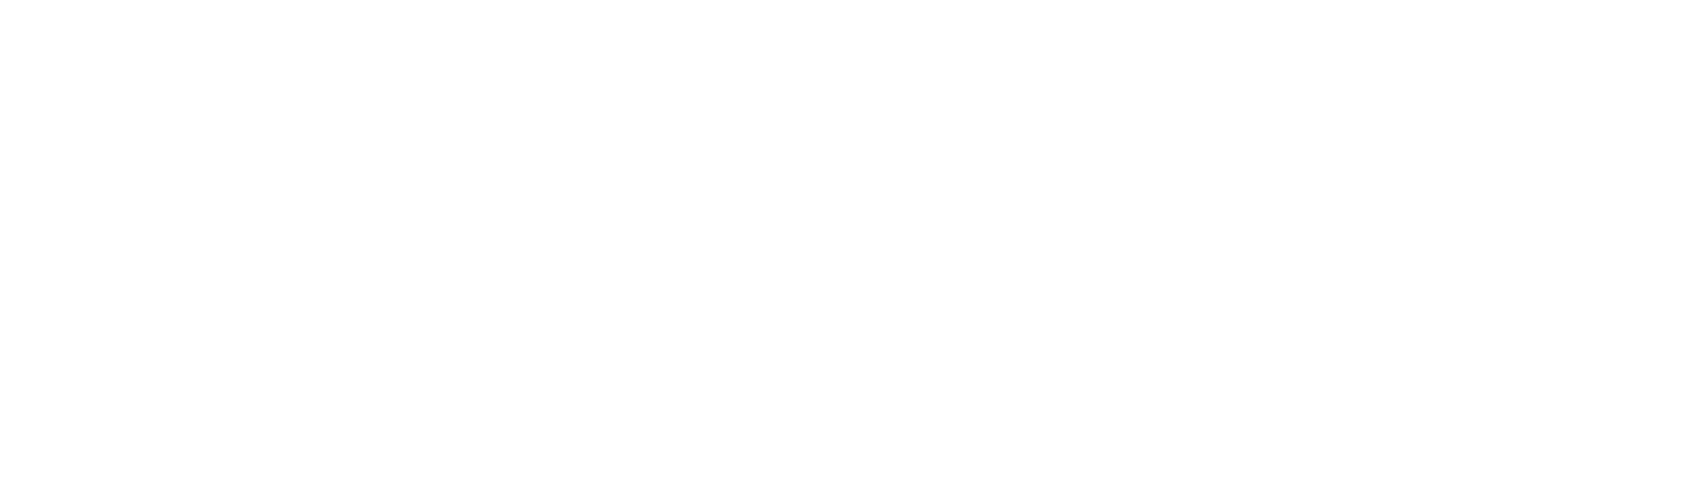 PantaRei logo